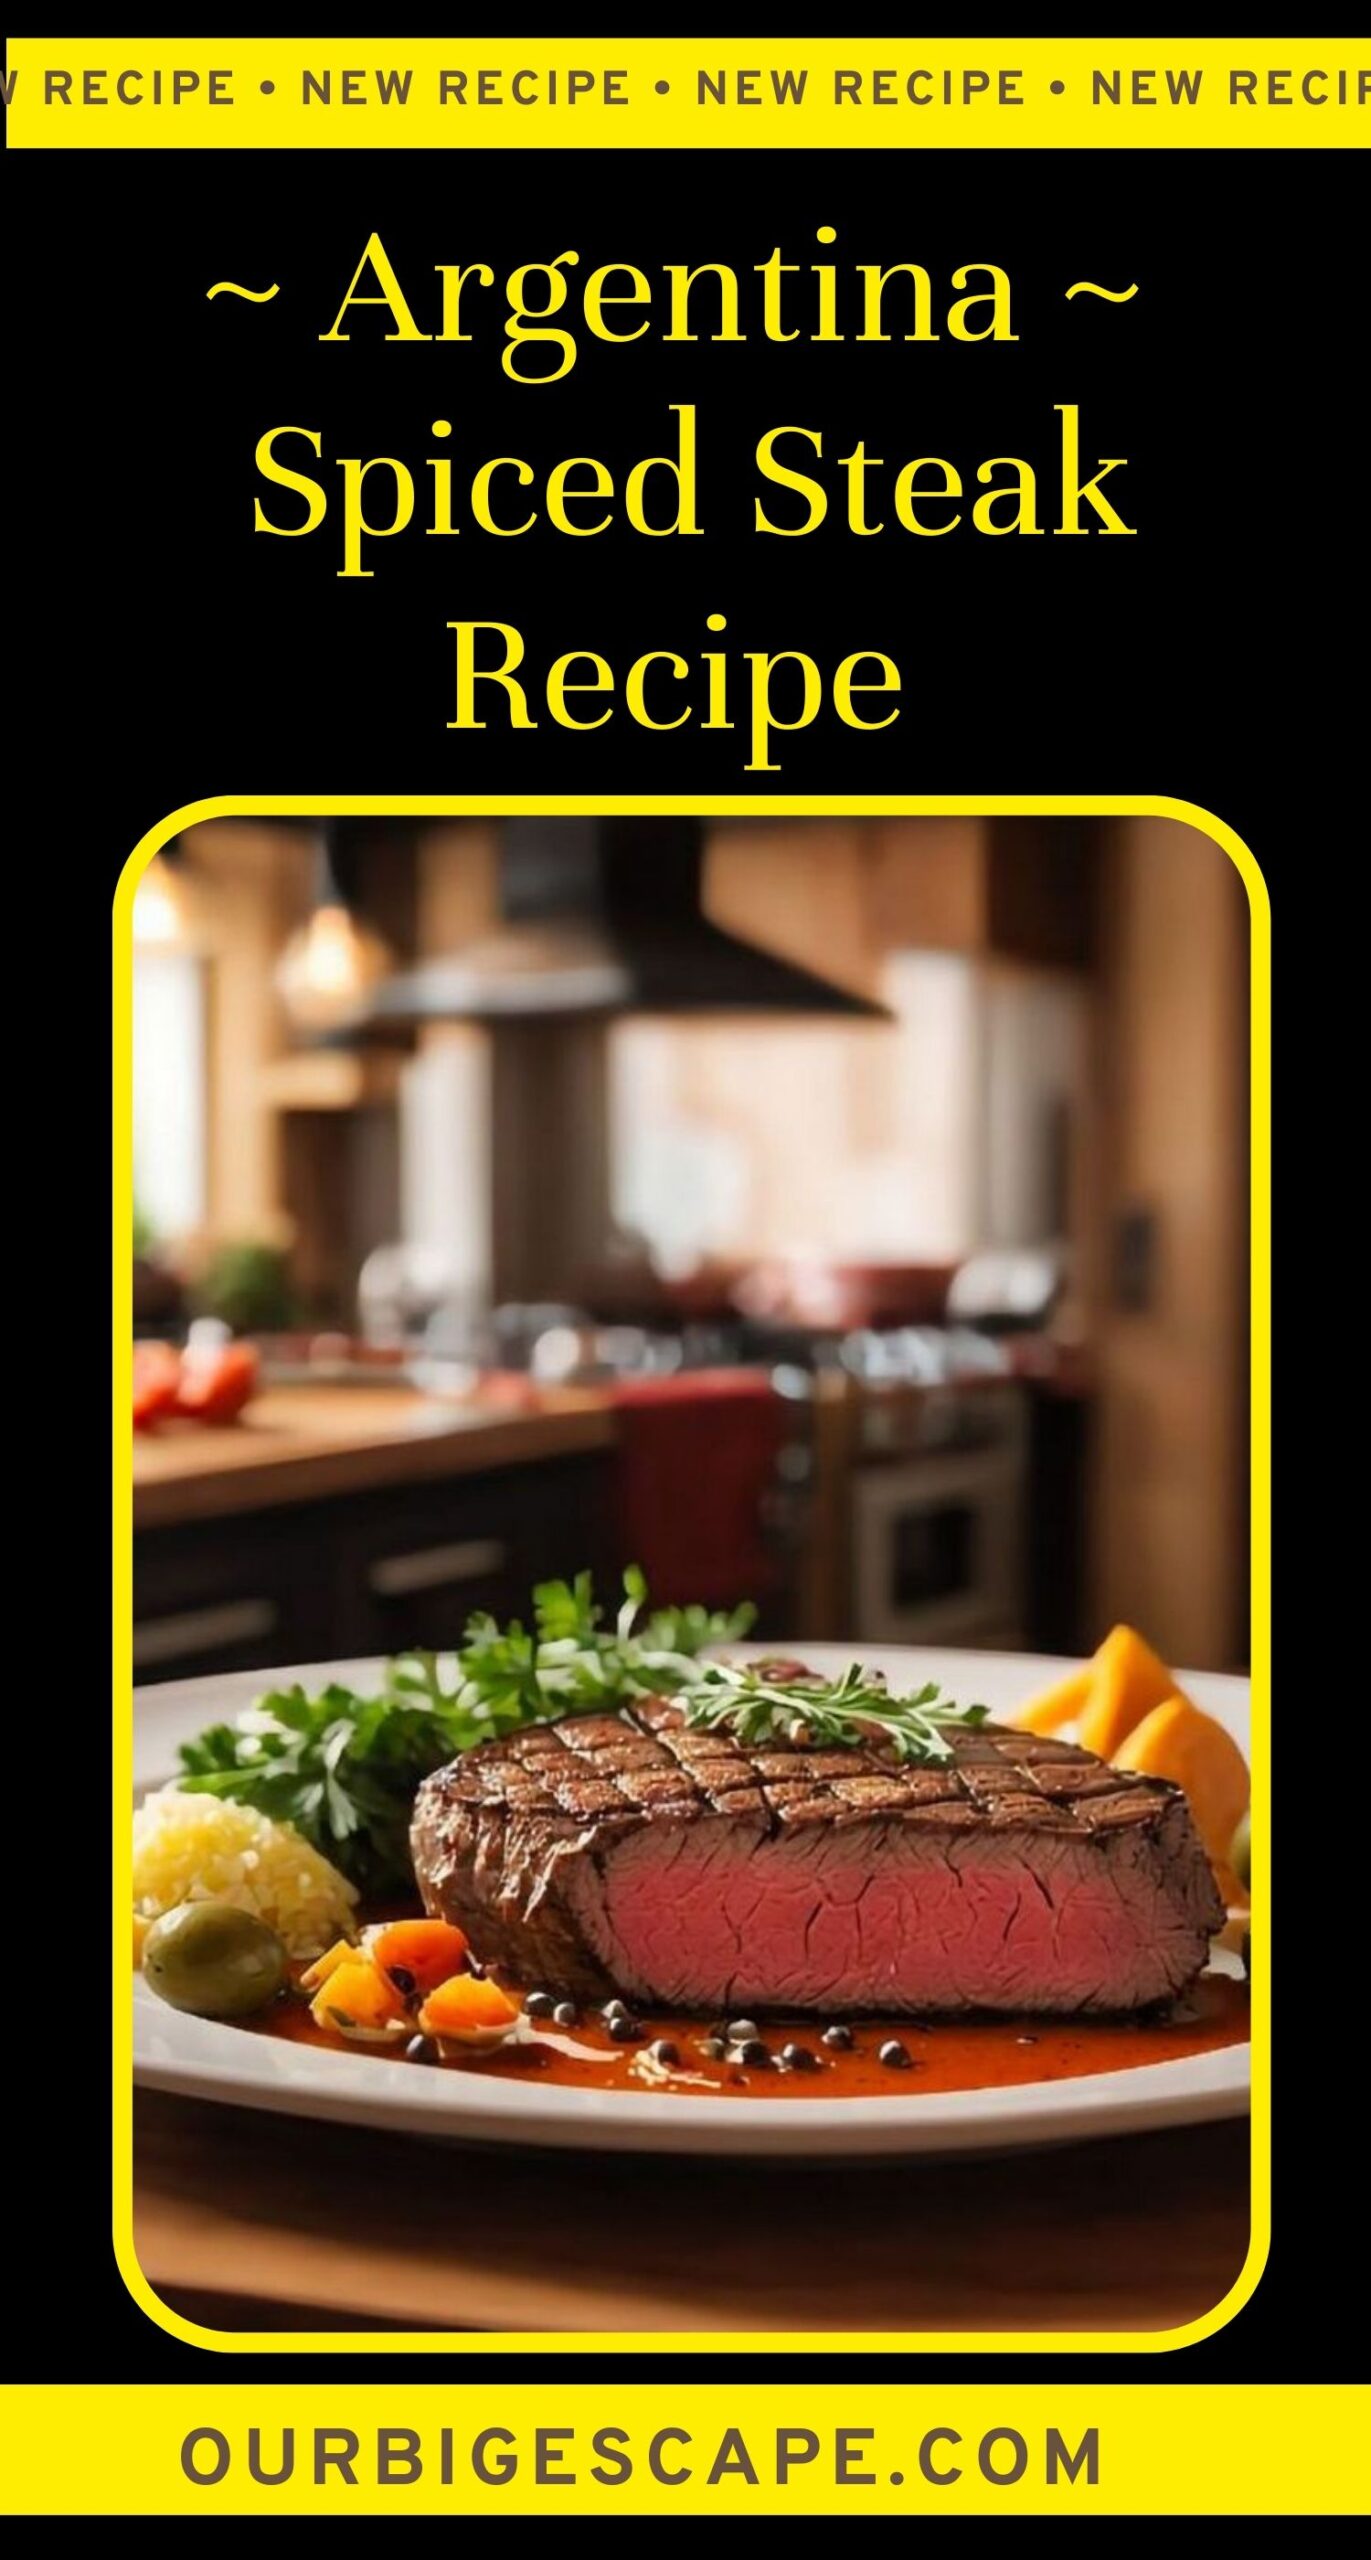 9. Argentine Spiced Steak Recipe